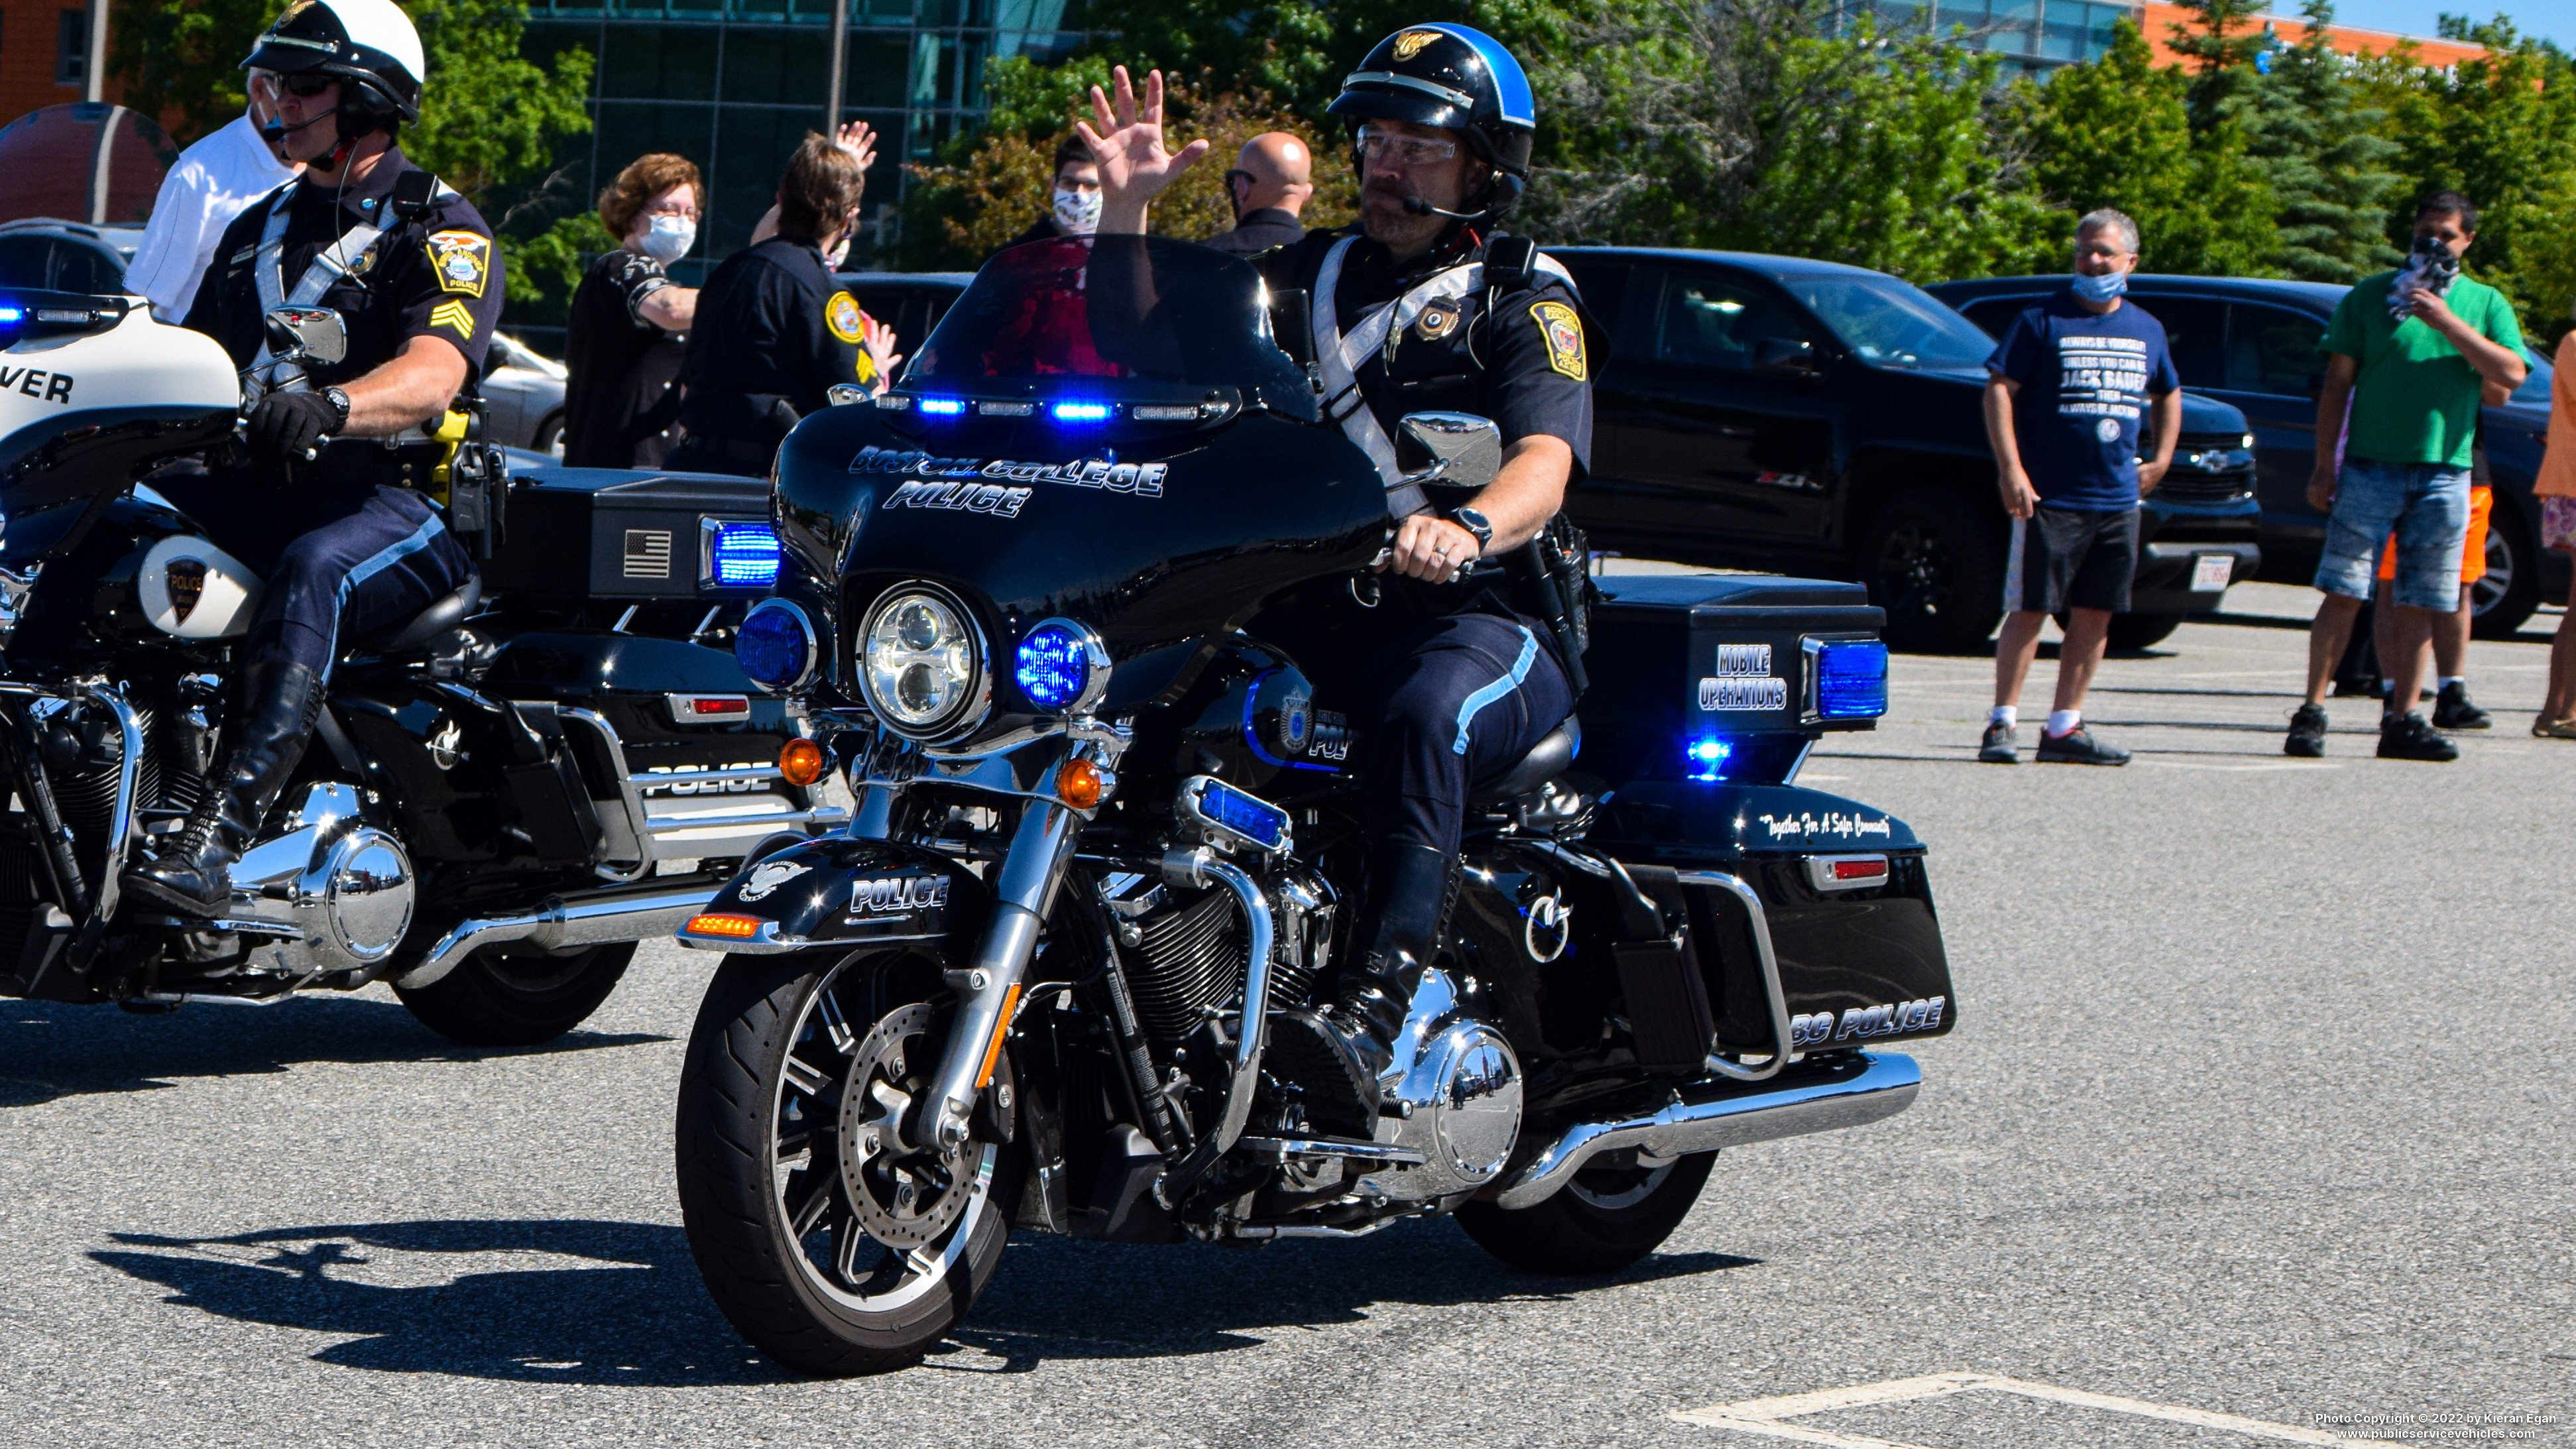 A photo  of Boston College Police
            Motorcycle, a 2021 Harley Davidson Electra Glide             taken by Kieran Egan